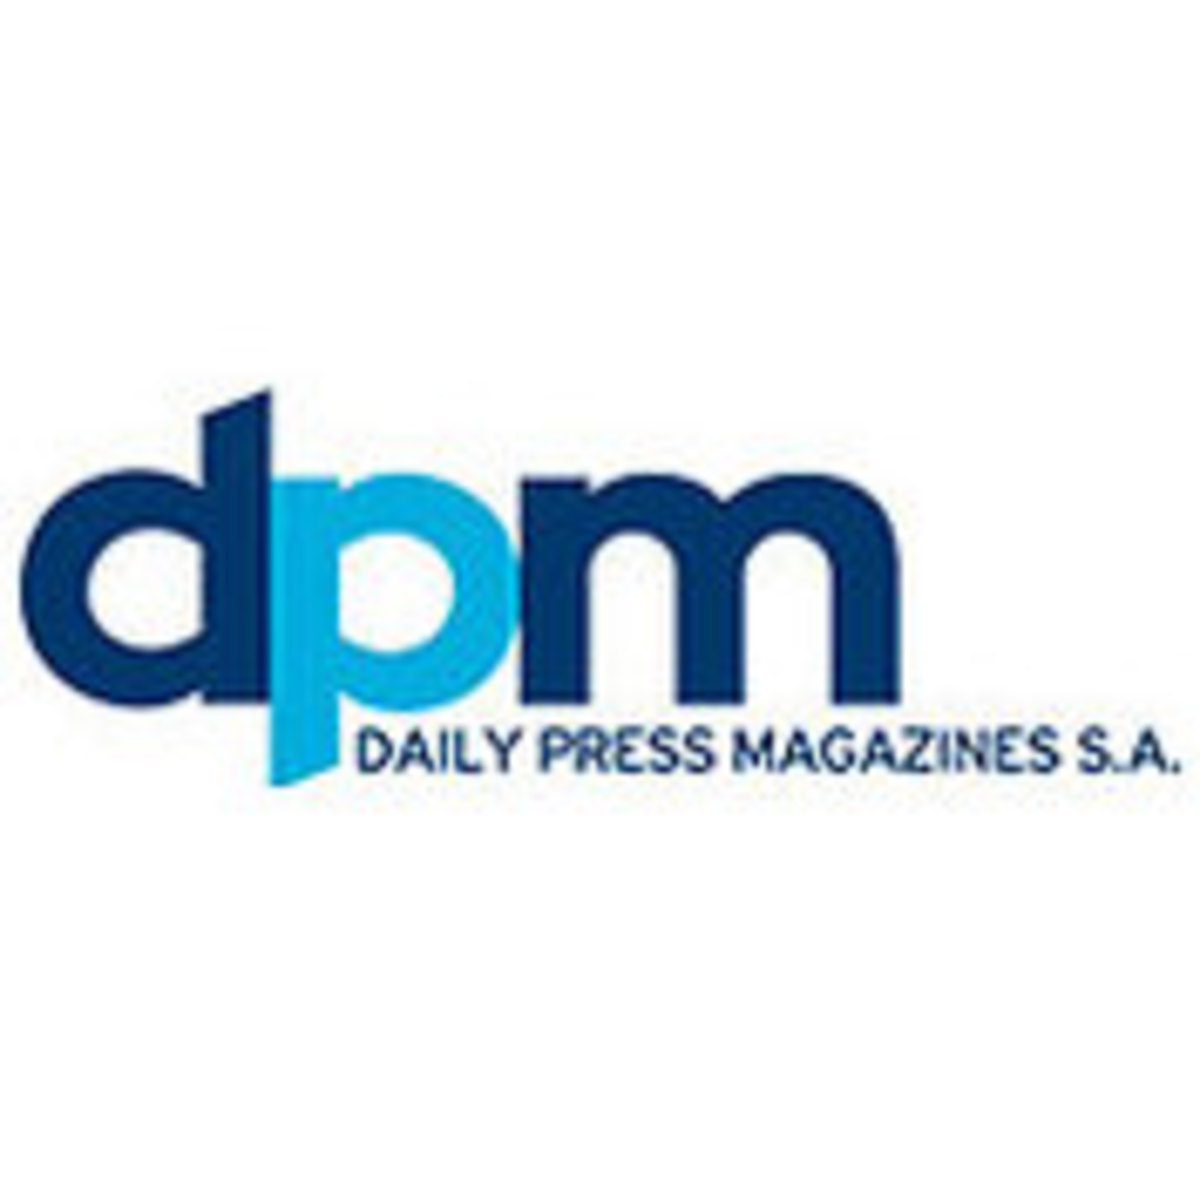 Αναστέλλεται η κυκλοφορία των περιοδικών της Daily Press Magazines